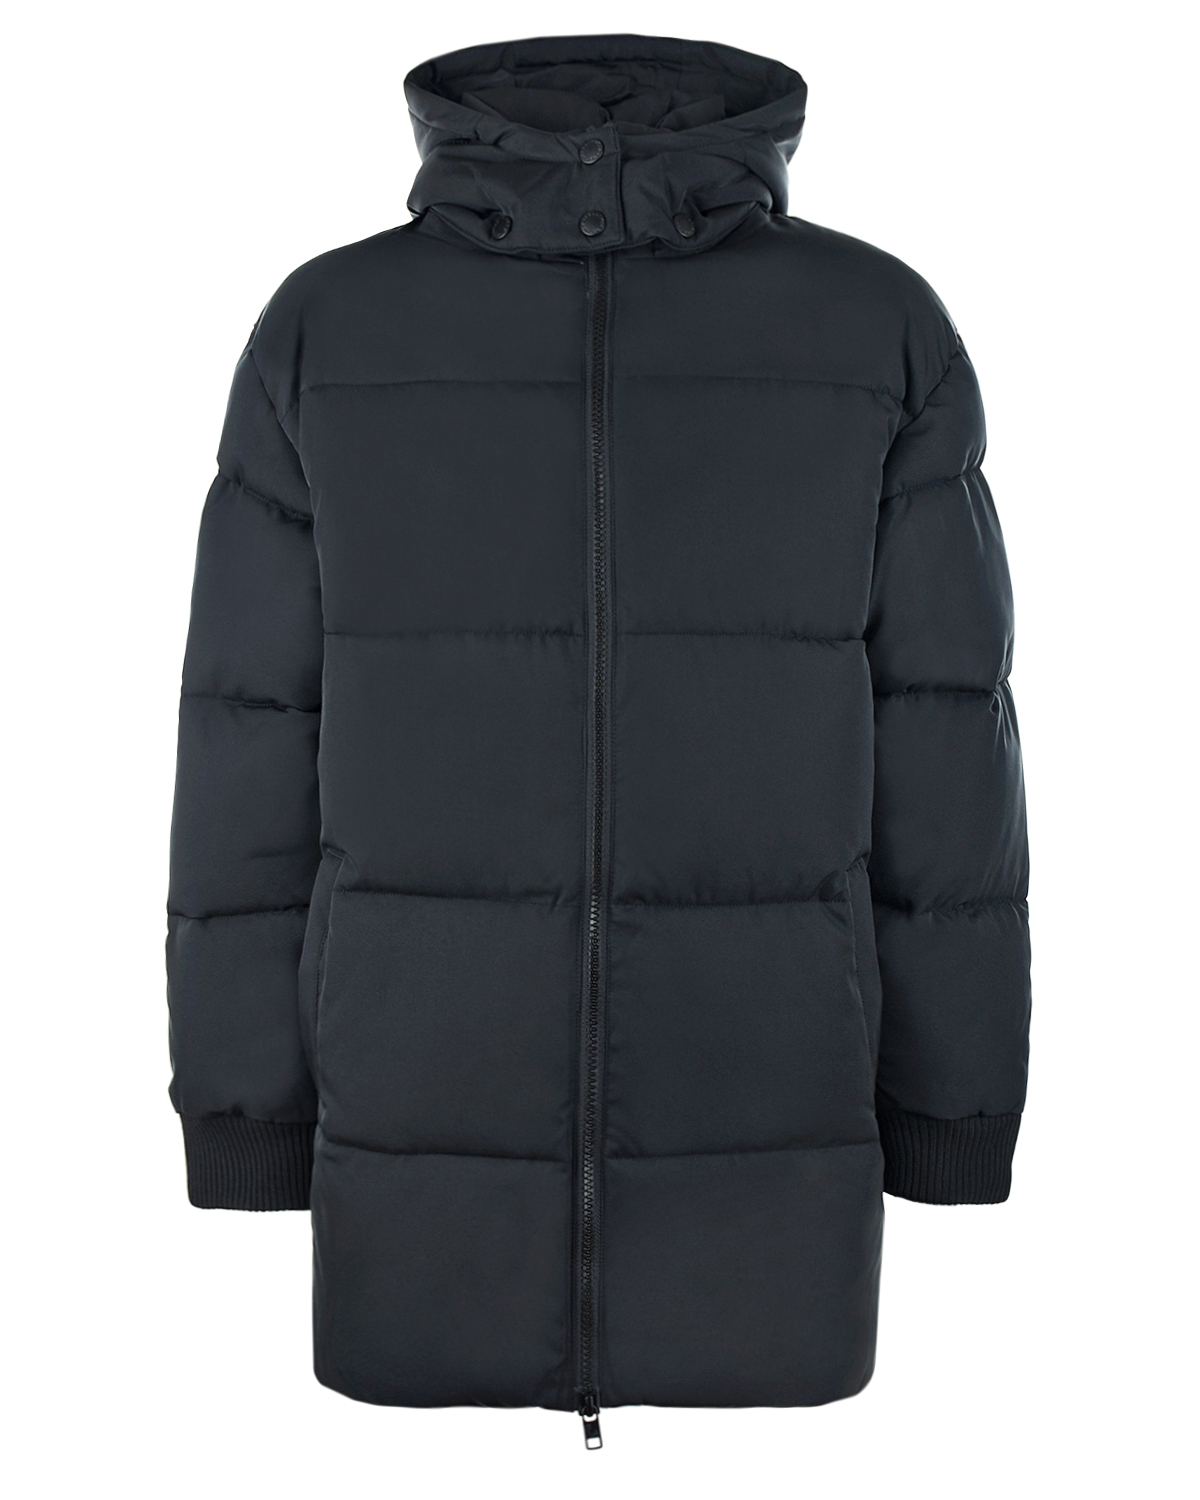 Удлиненная куртка с лампасами на рукавах Stella McCartney детская, Черный, 100%полиэстер  - купить со скидкой